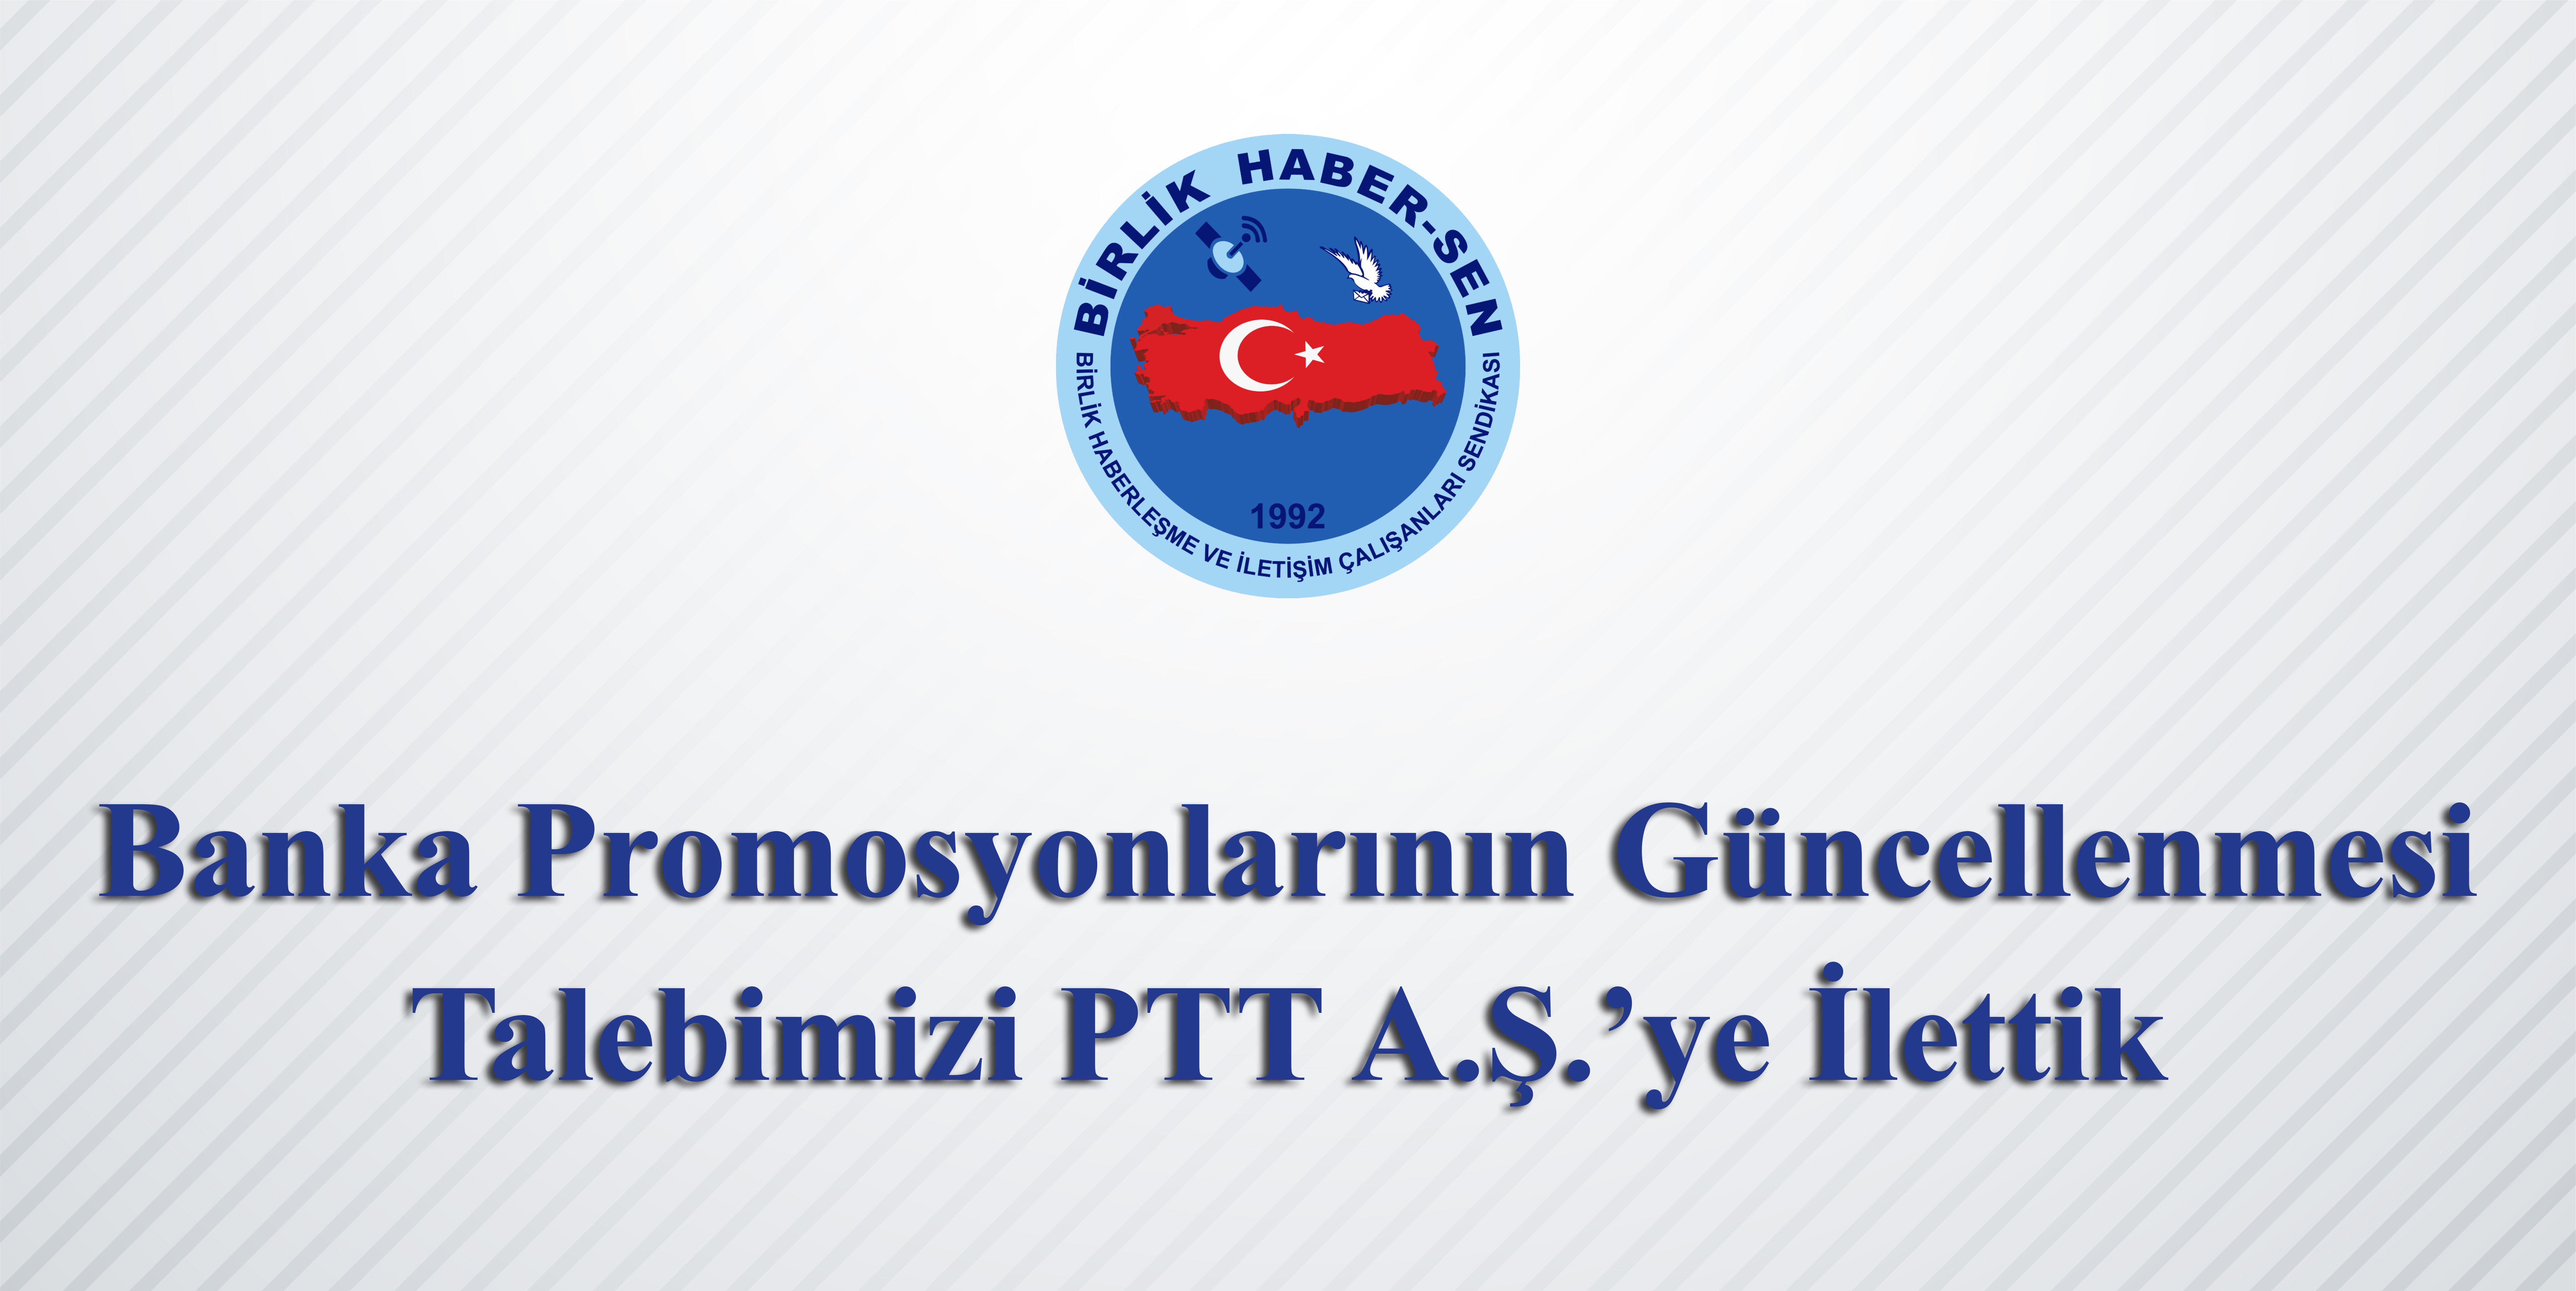 Banka Promosyonlarının Güncellenmesi Talebimizi PTT A.Ş.’ye İlettik